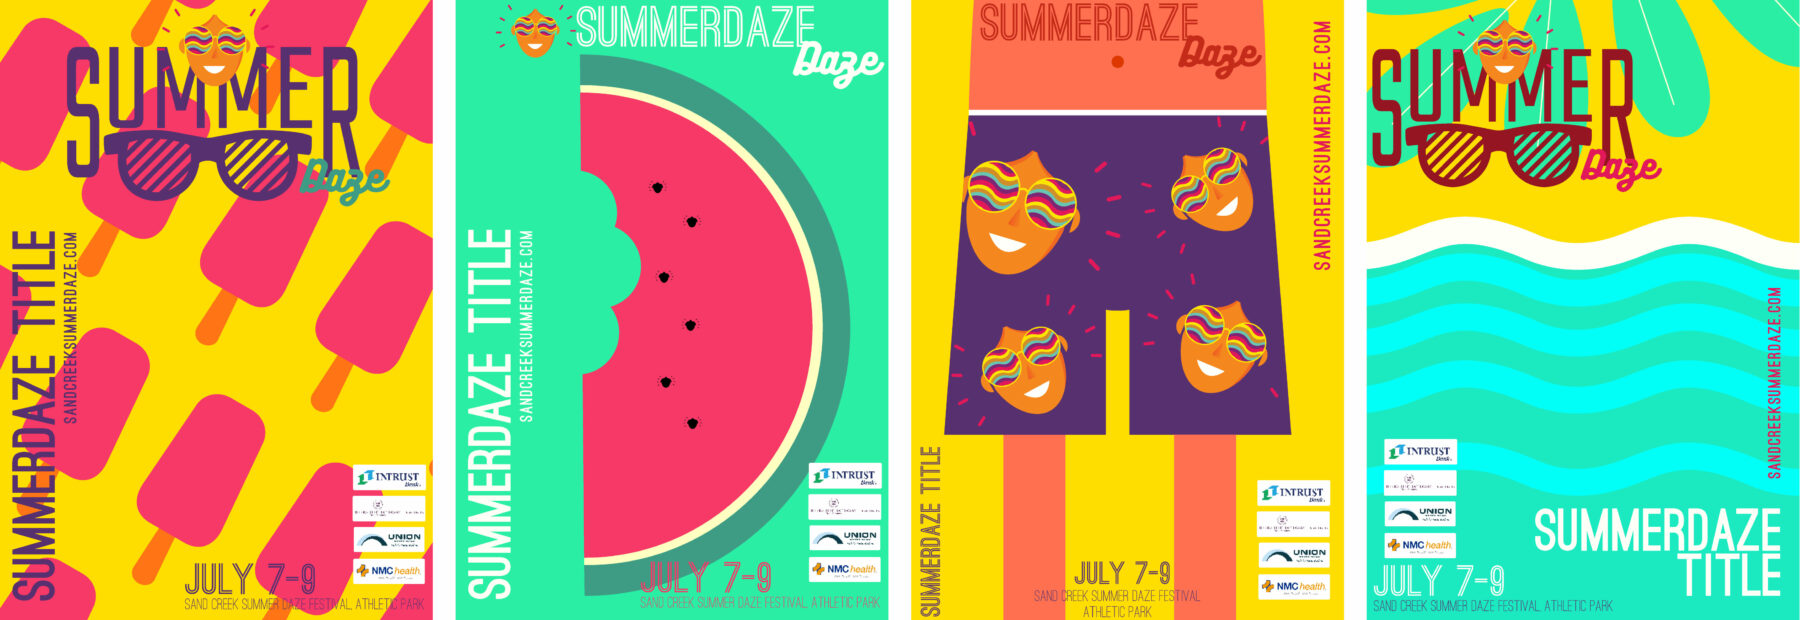 Summerdaze_Summer-is-Here_Posters